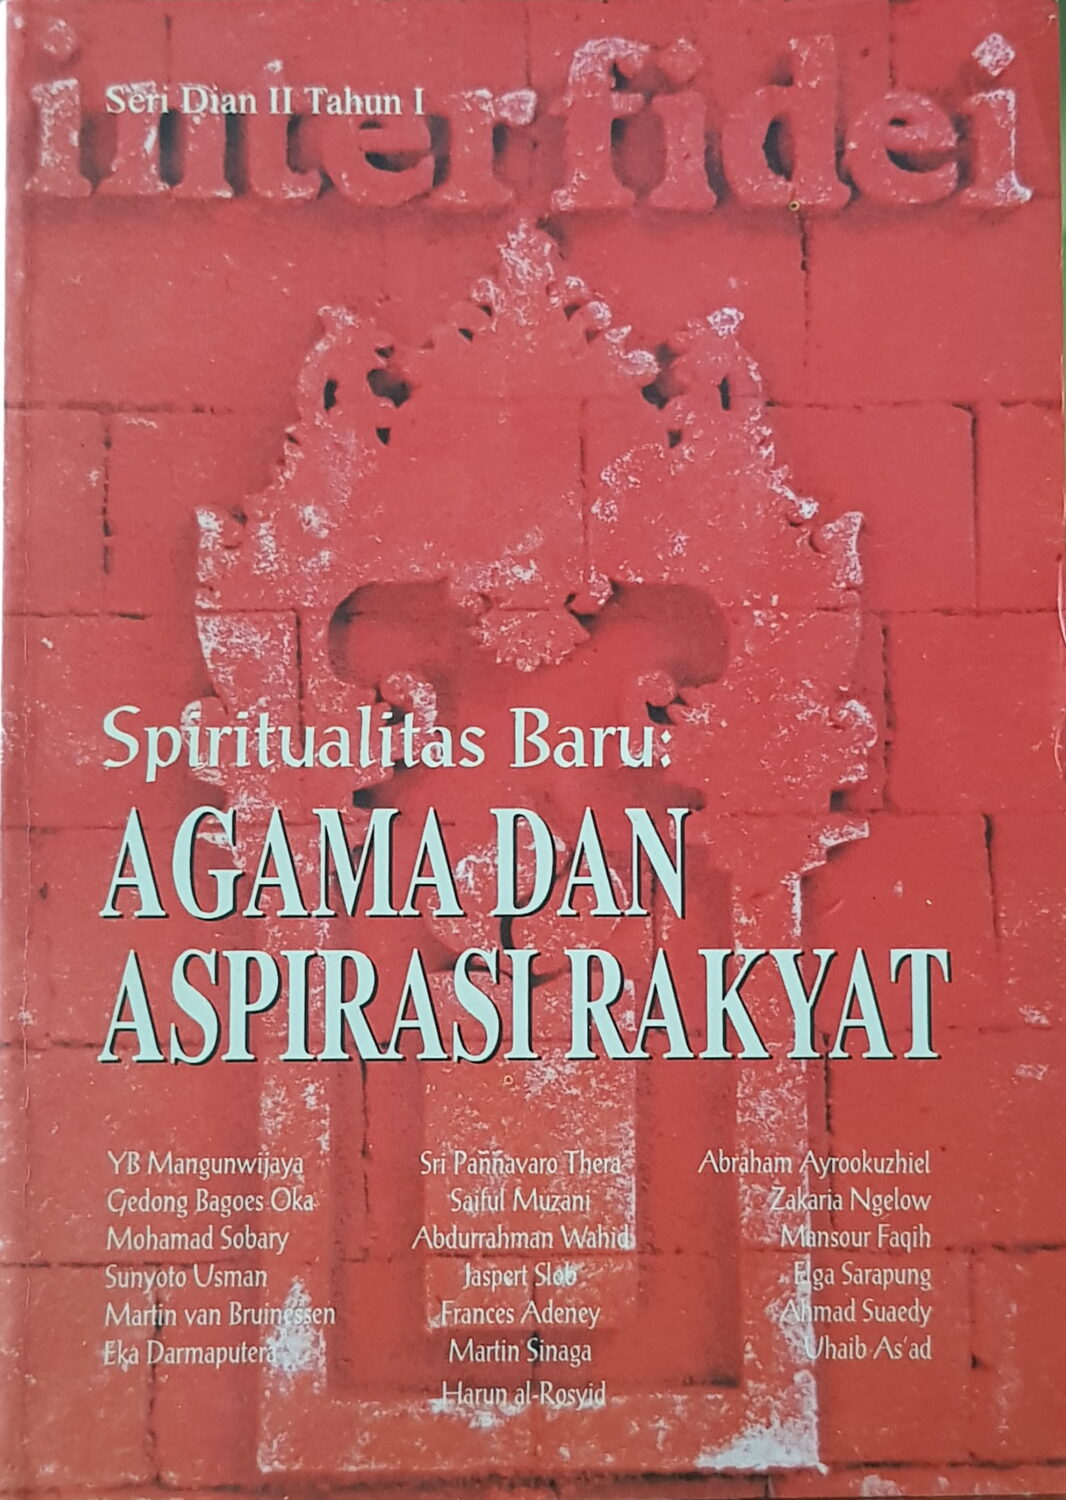 Spiritualitas Baru: Agama dan Aspirasi Rakyat (Seri Dian II Tahun I)